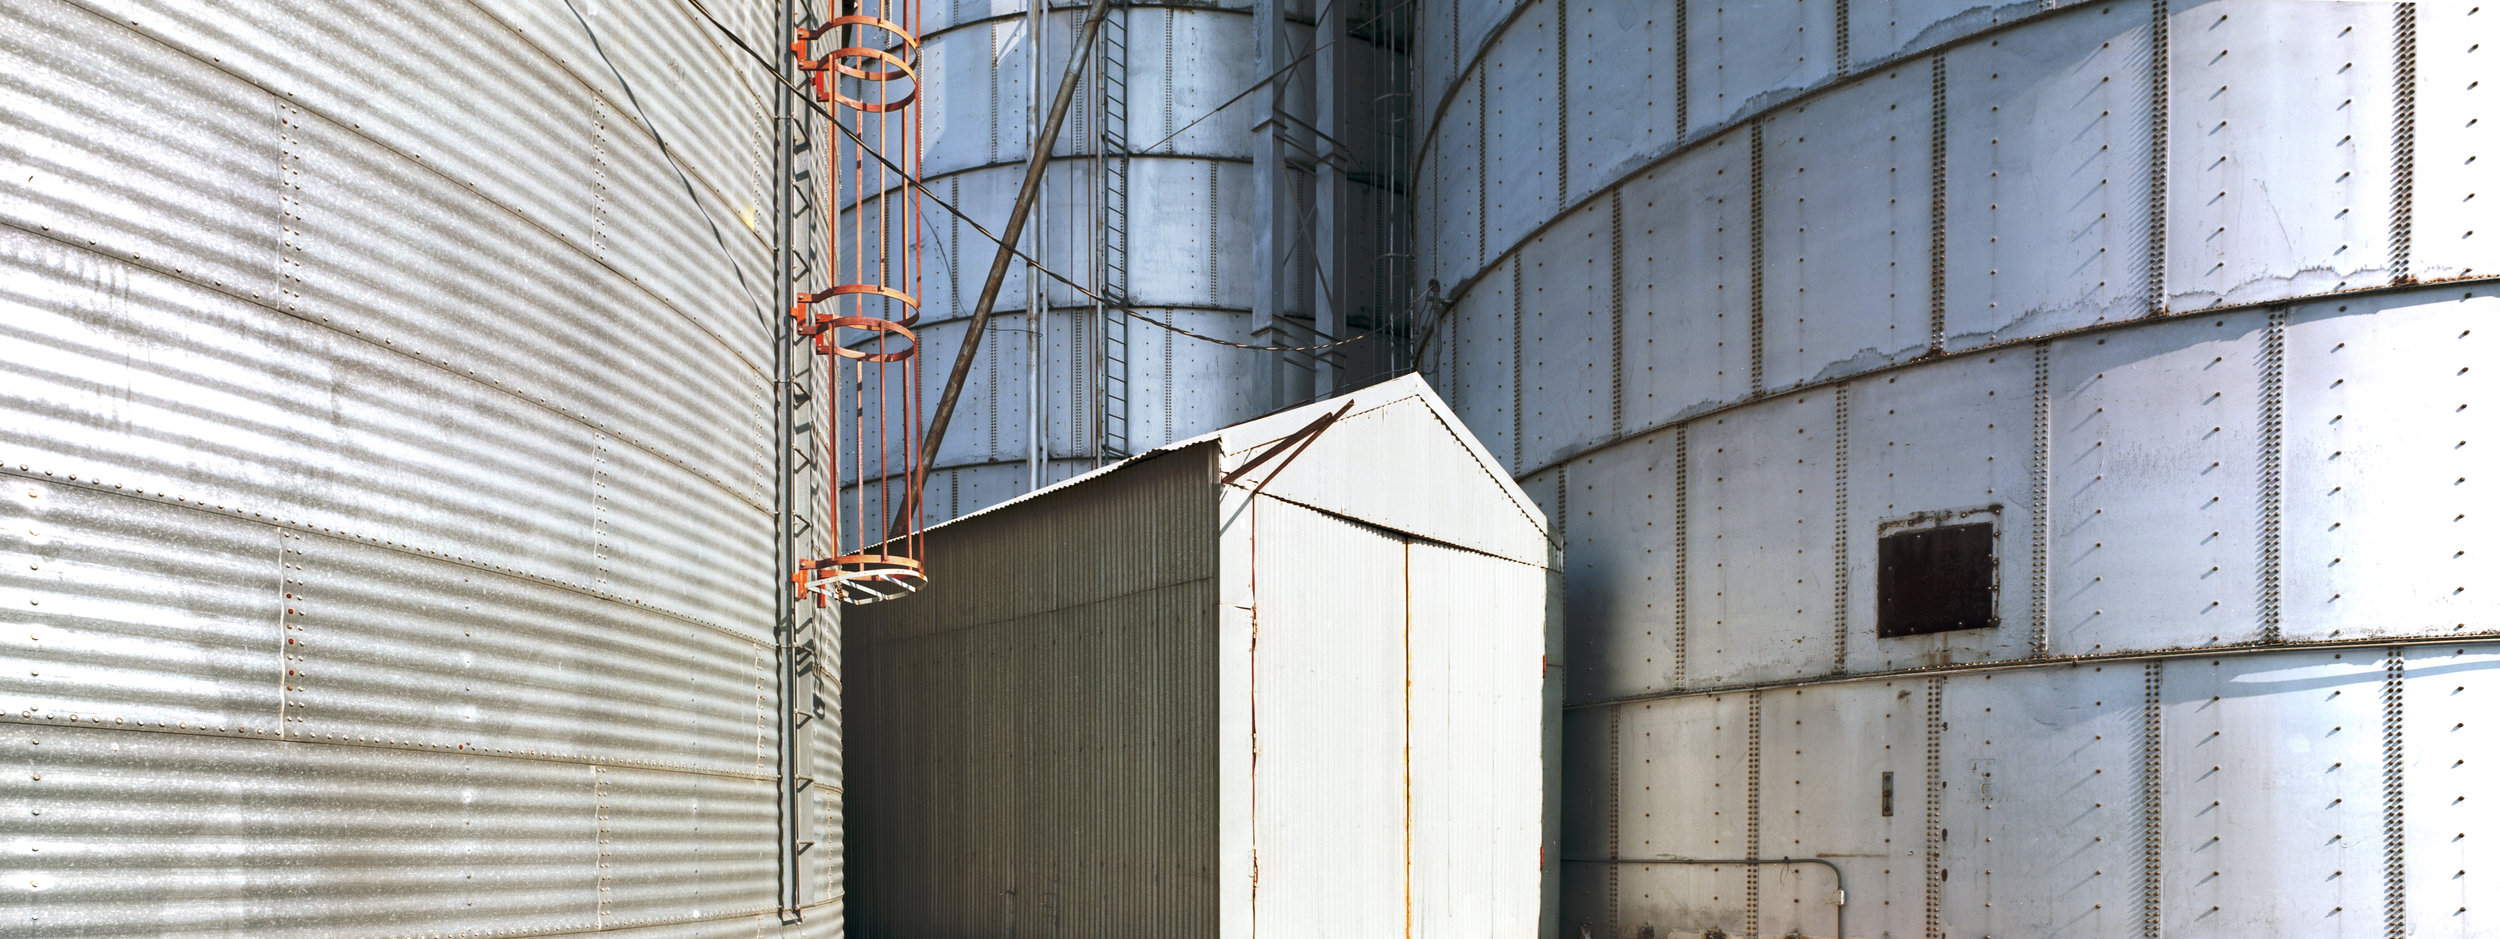  Washtucna, WA grain elevators. Ektar 100, 1/30 sec, f/18. 